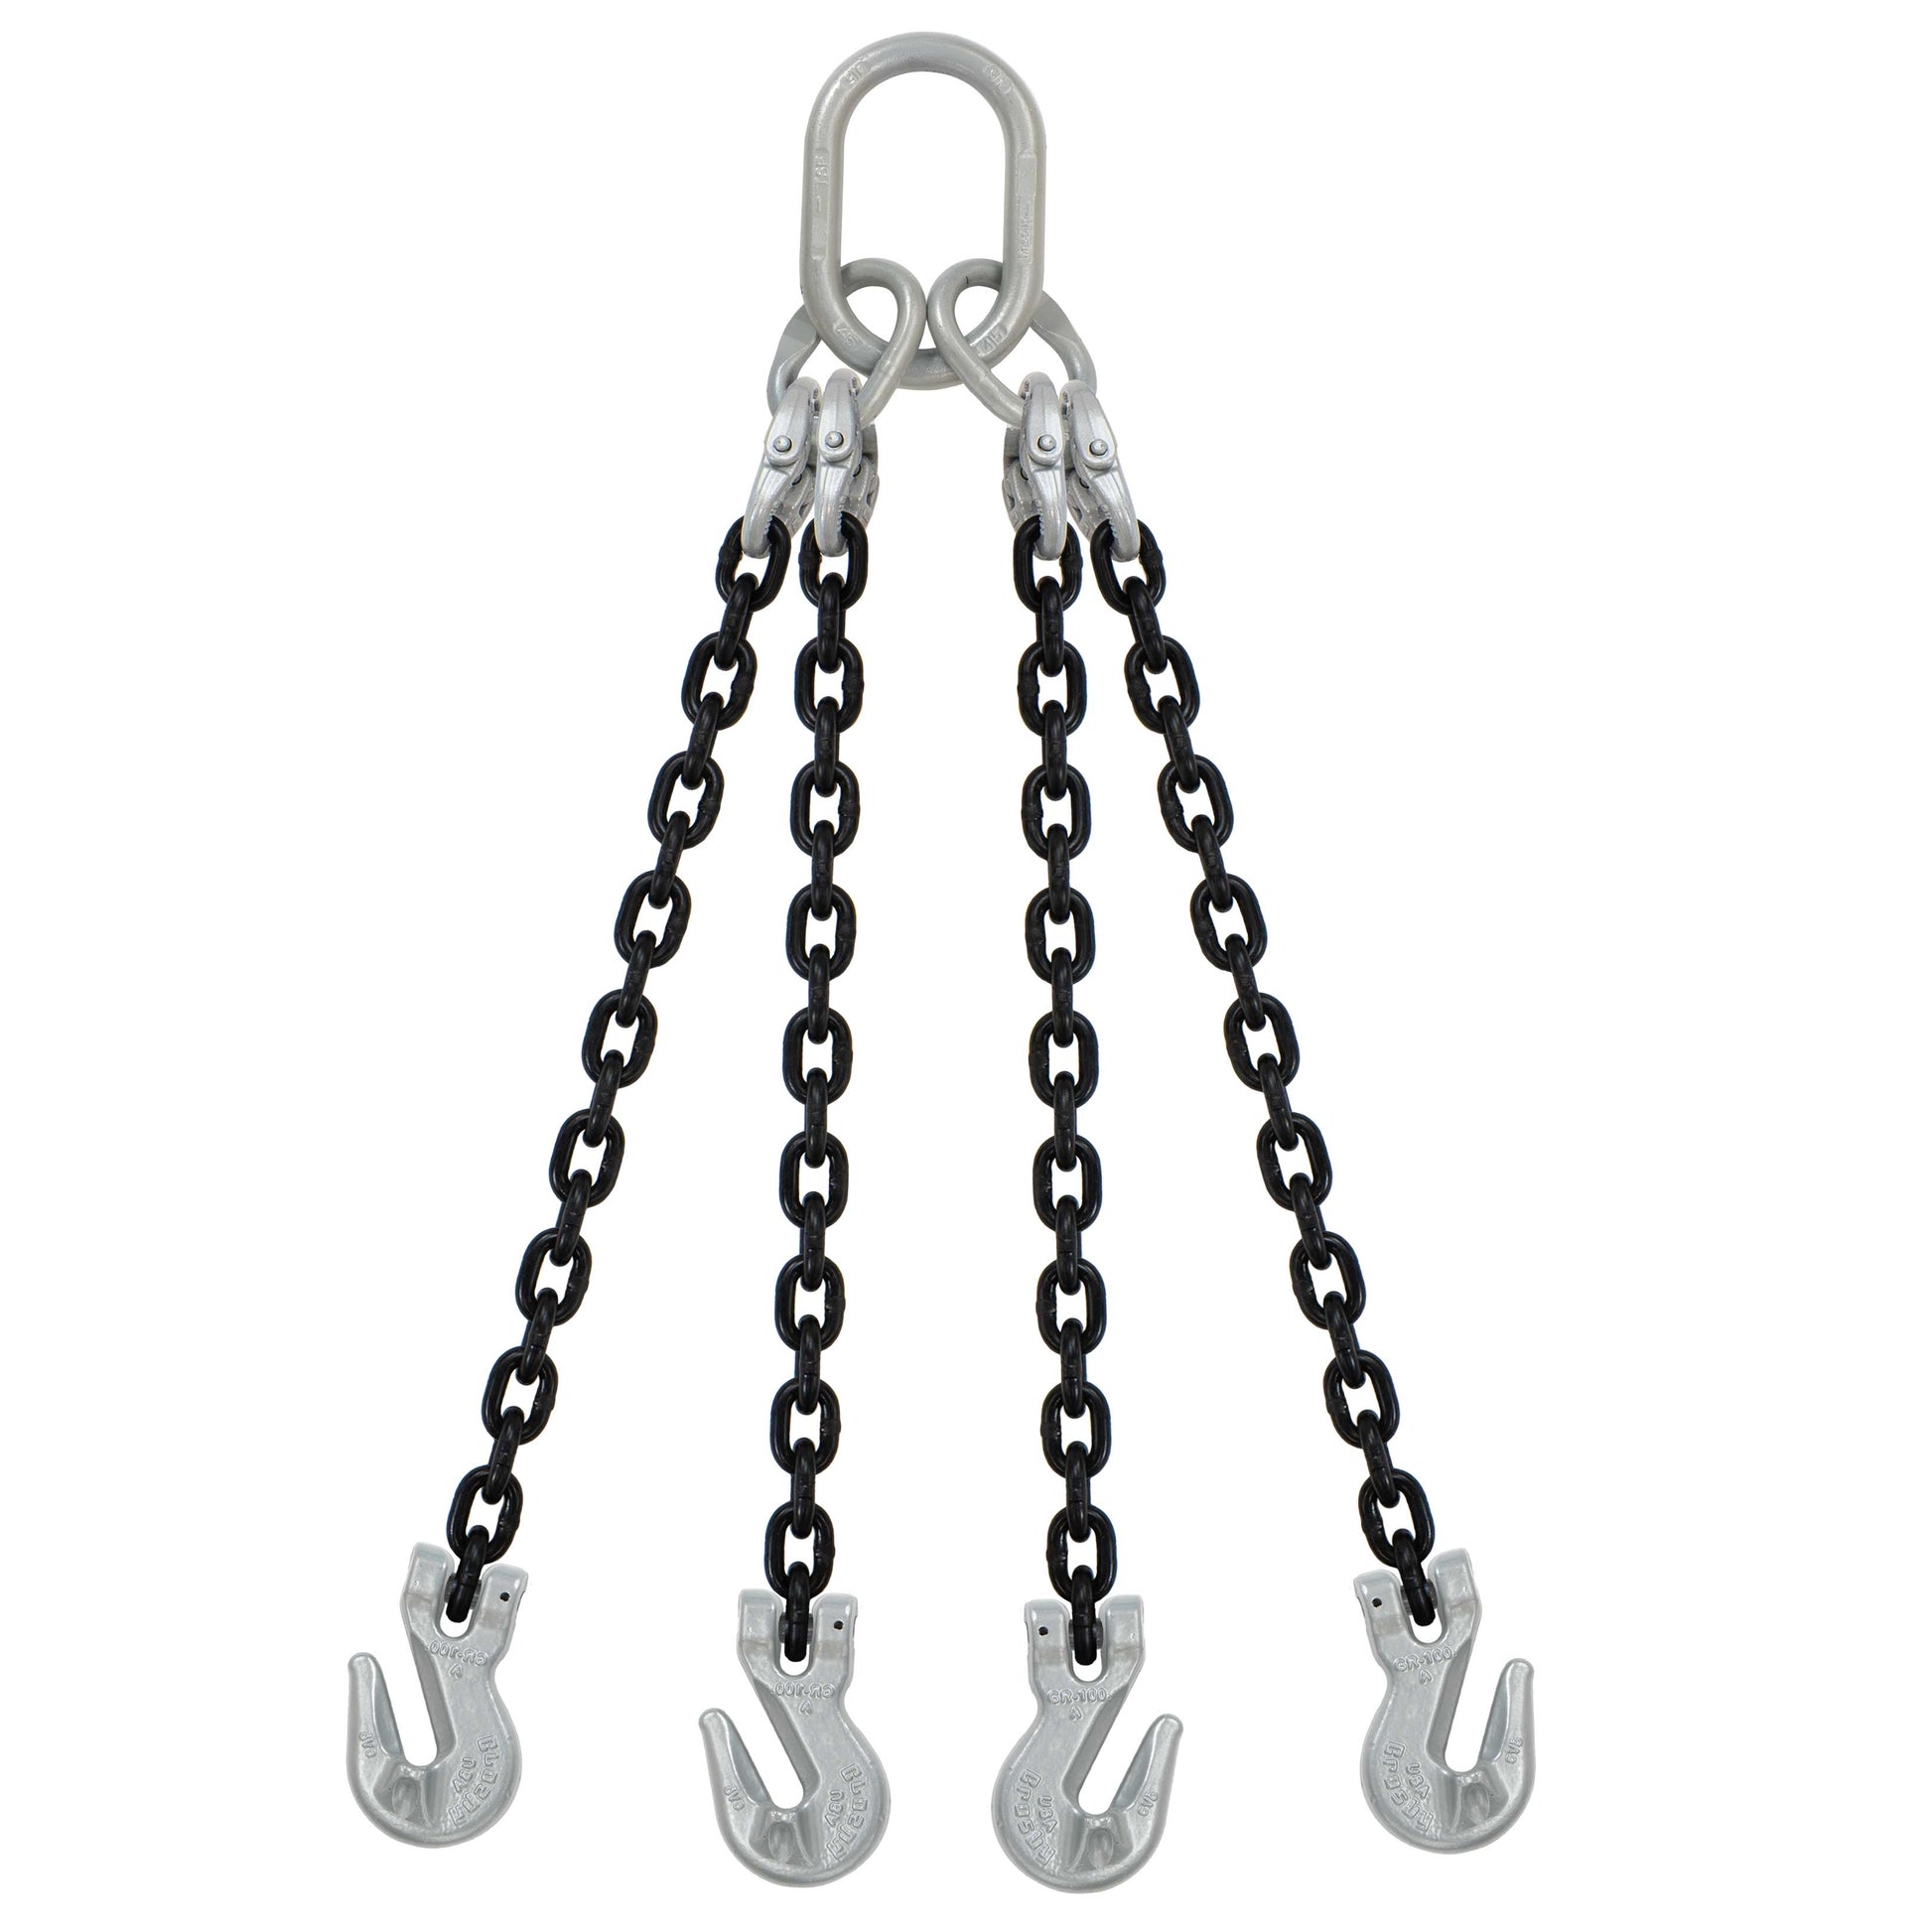 5/16" x 16' - Domestic 4 Leg Chain Sling w/ Crosby Grab Hooks - Grade 100